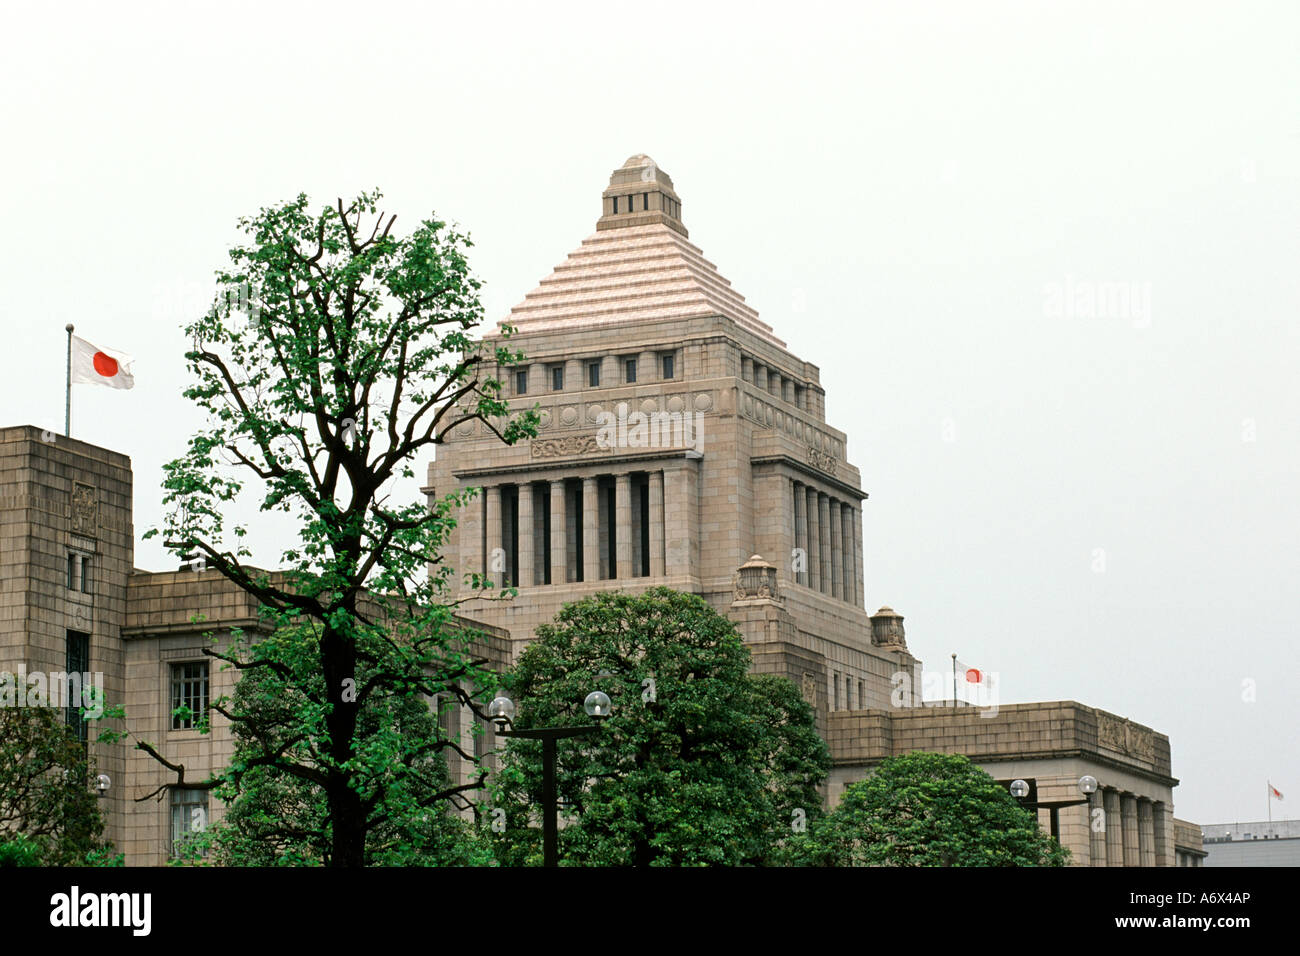 Das japanische (Kokkai) Parlamentsgebäude in Tokio. Gemeinhin in englischer Sprache als das japanische Parlament. Stockfoto